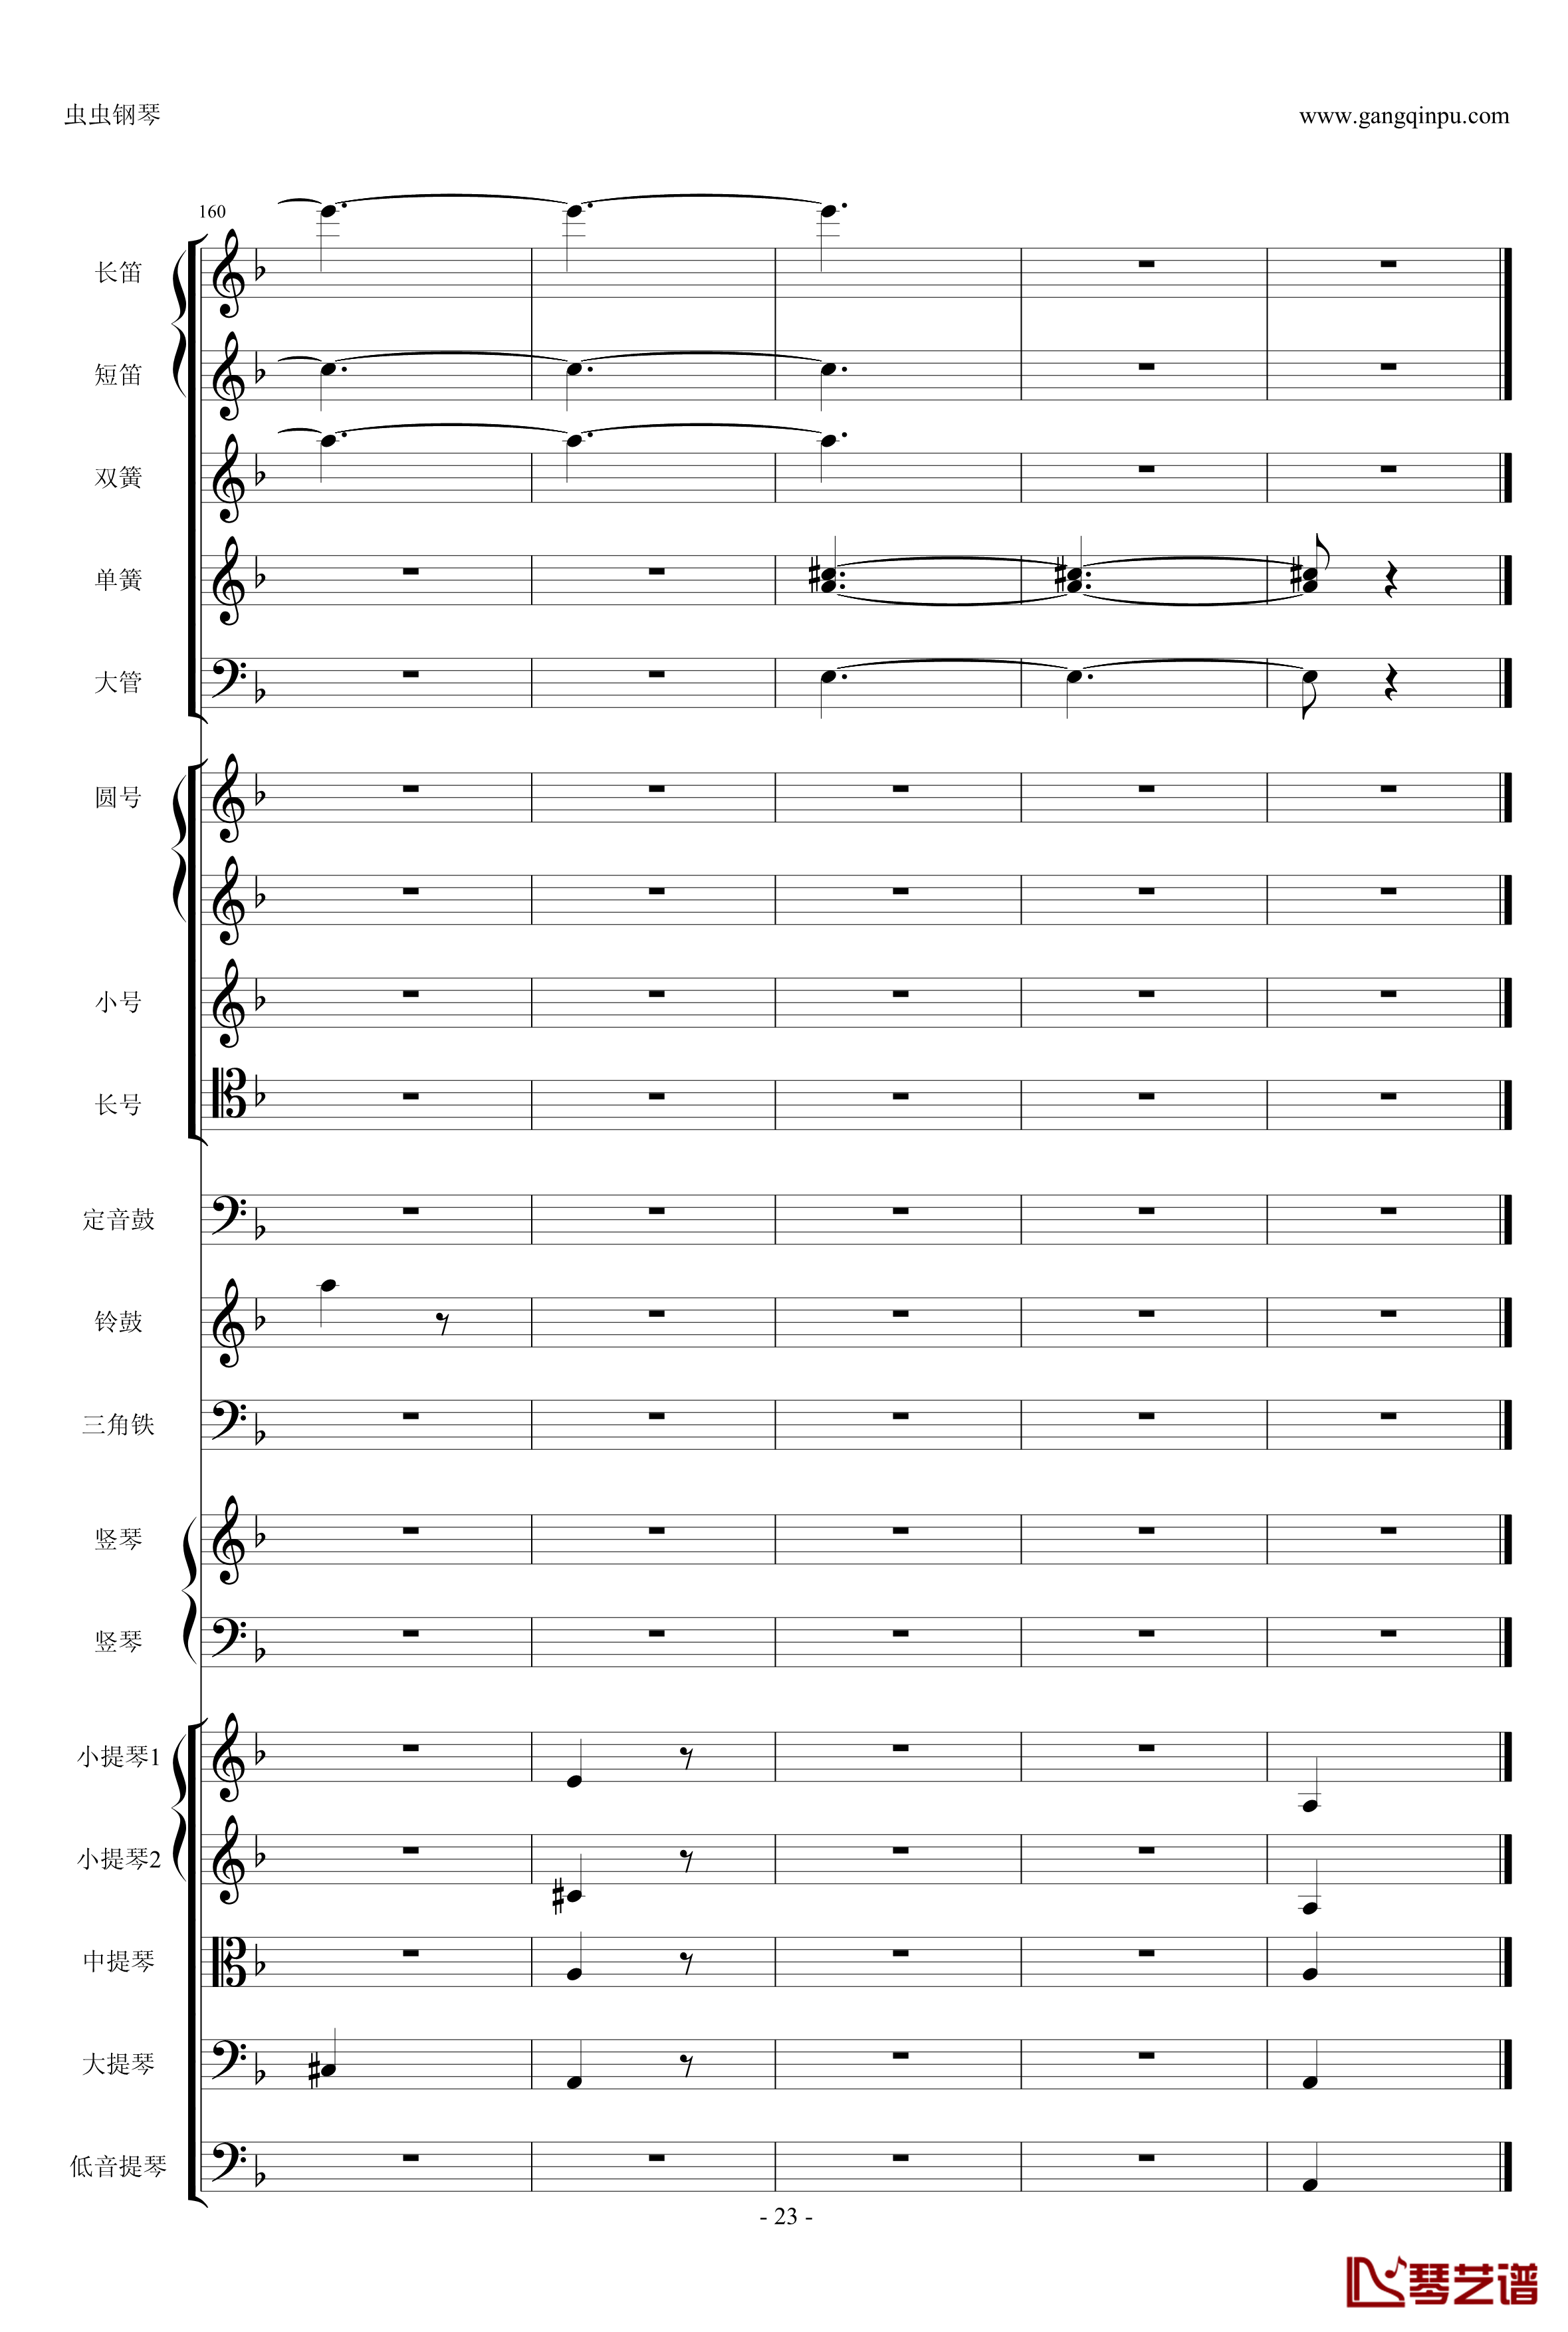 歌剧卡门选段钢琴谱-比才-Bizet- 第四幕间奏曲23